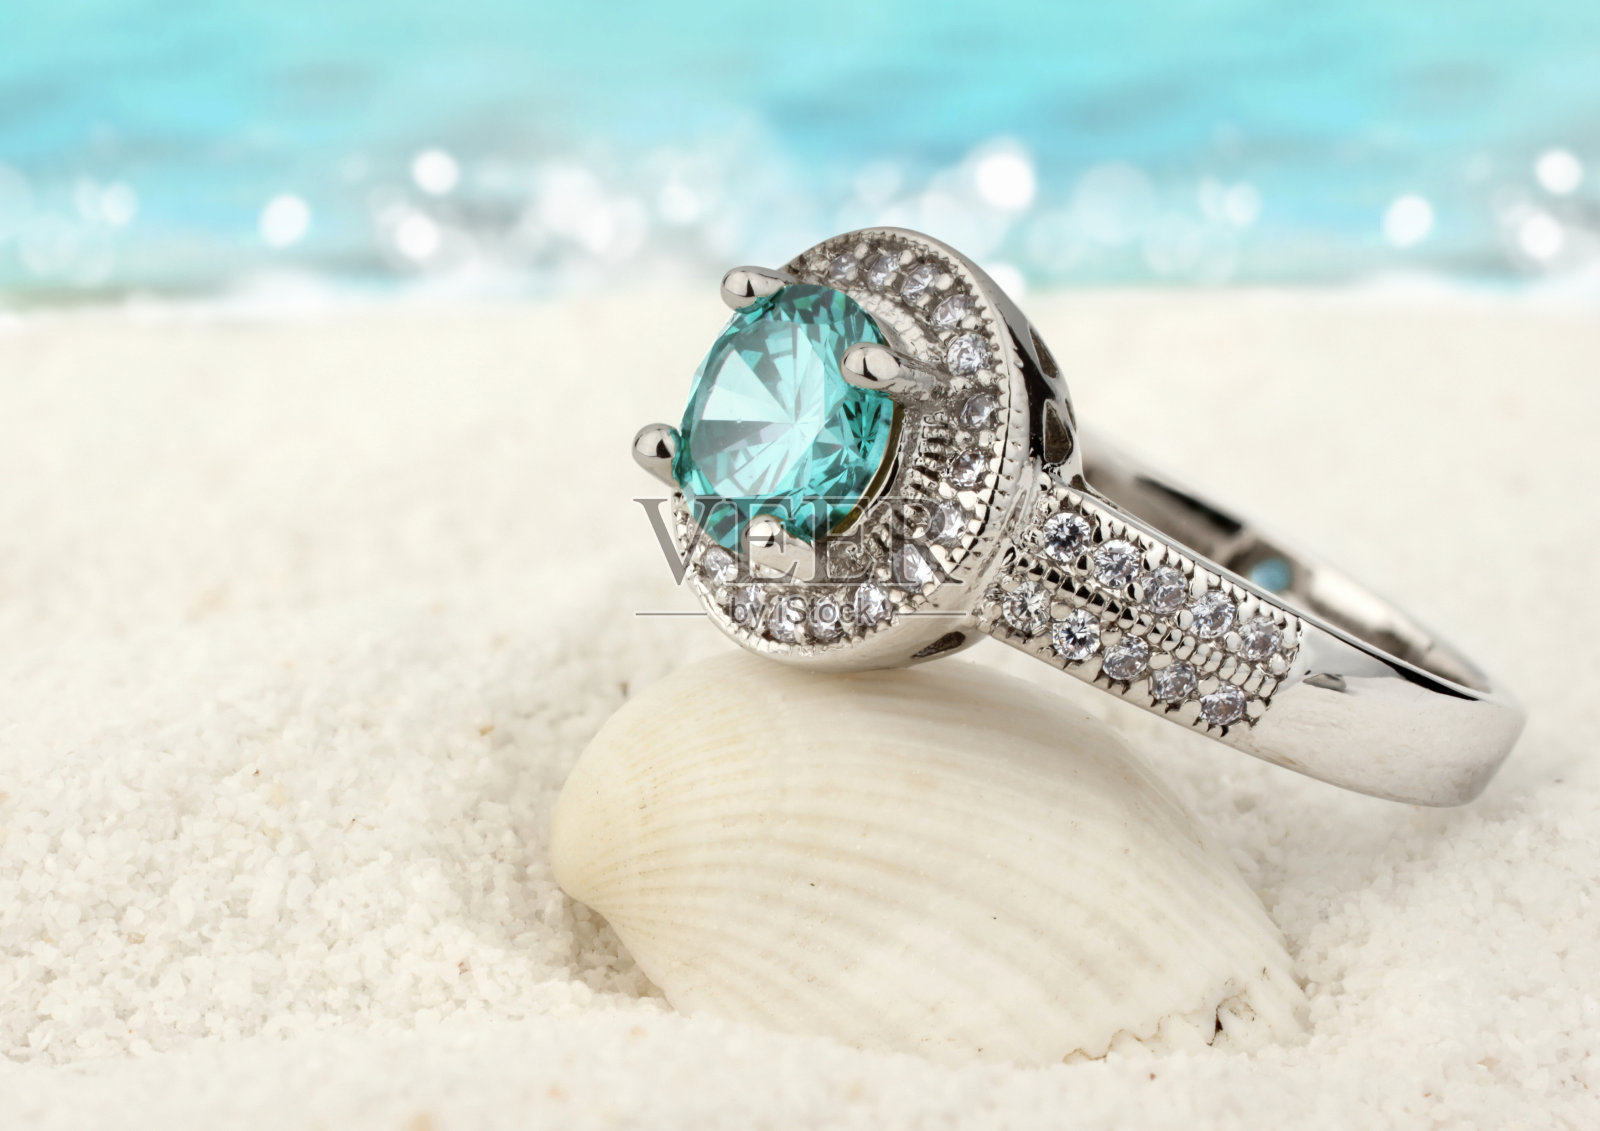 珠宝戒指与海蓝宝石宝石在沙滩上的背景照片摄影图片